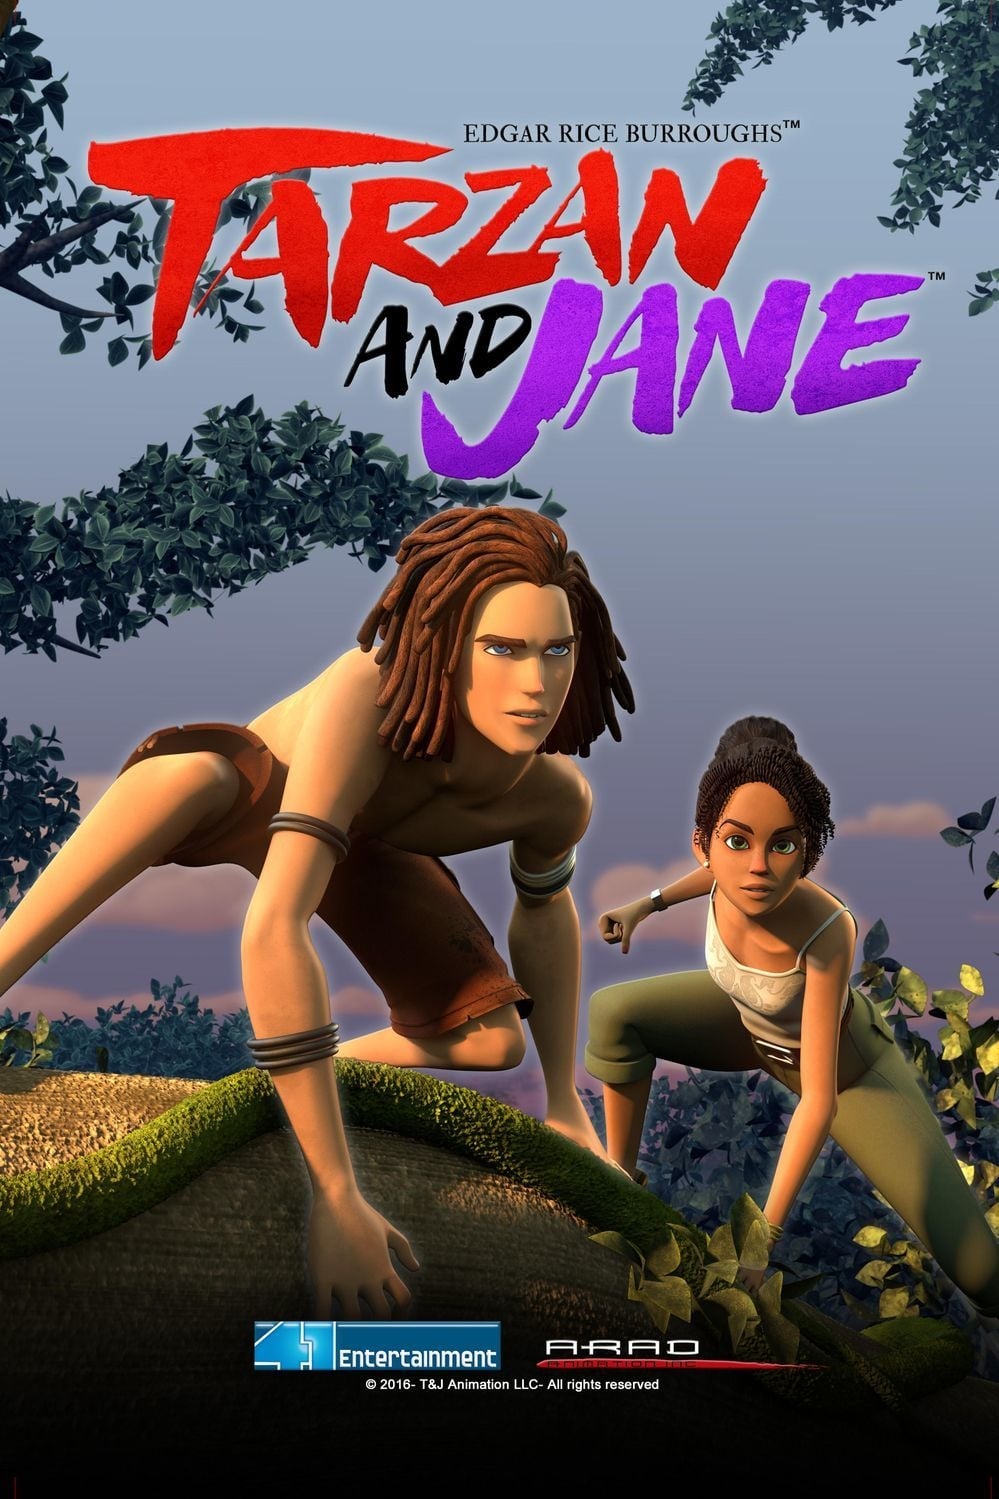 Edgar Rice Burroughs' Tarzan and Jane Poster